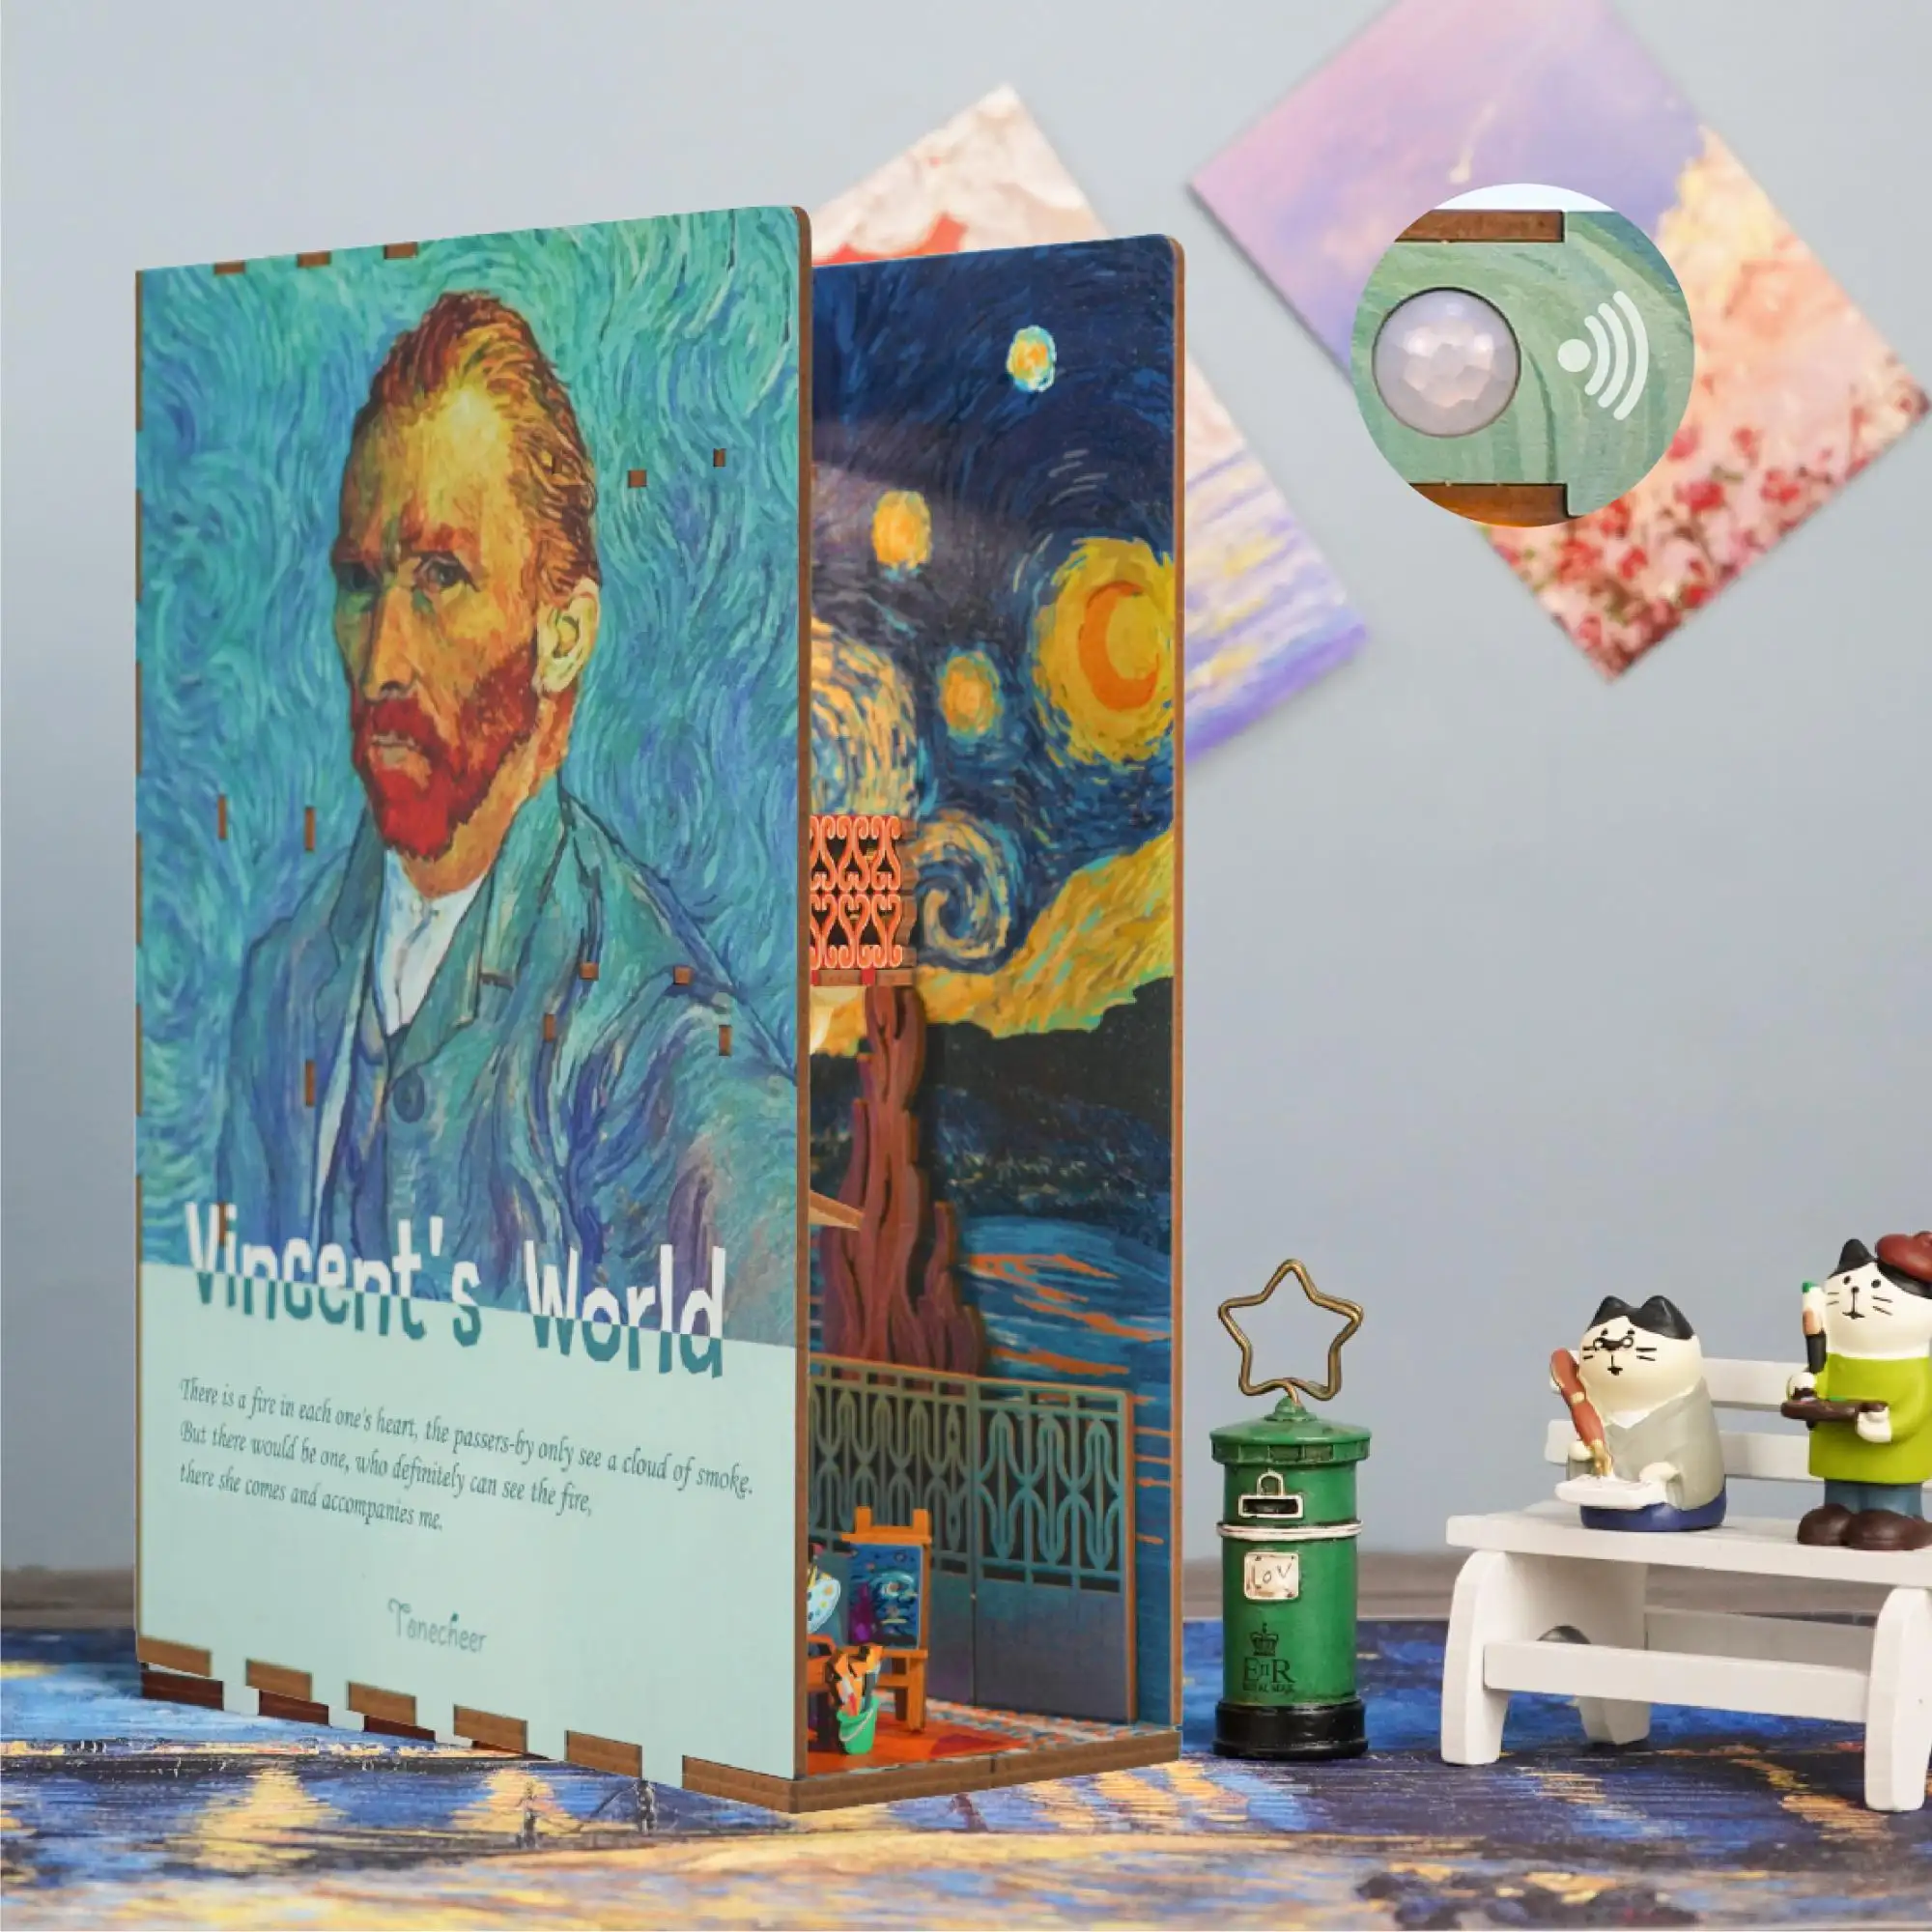 Tonecheer ünlü boyama ev dekorasyon minyatür mobilya diy montaj oyuncaklar Vincent dünya kitap Nook